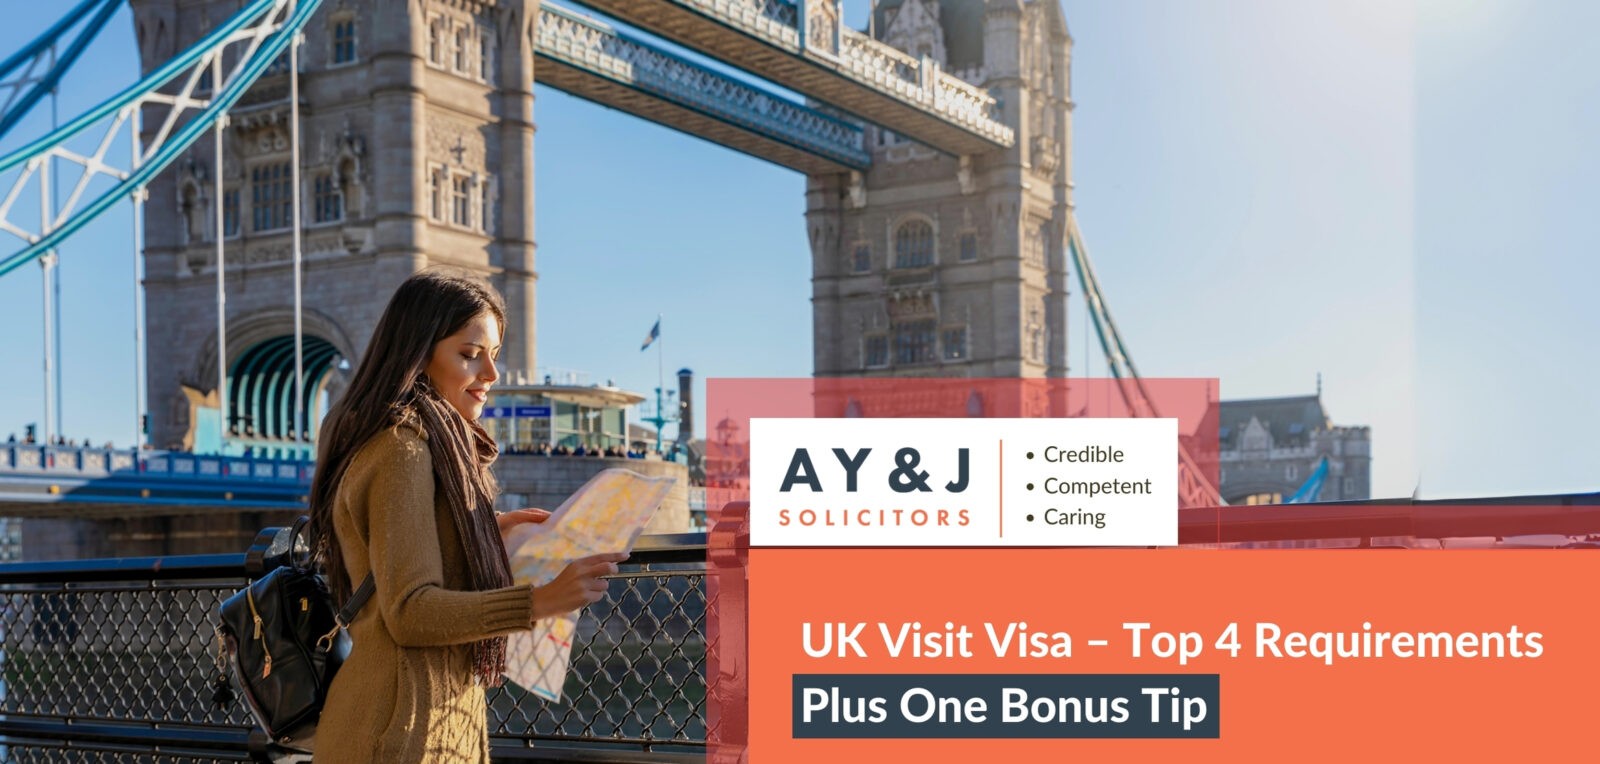 UK Visit Visa – Top 4 Requirements Plus One Bonus Tip